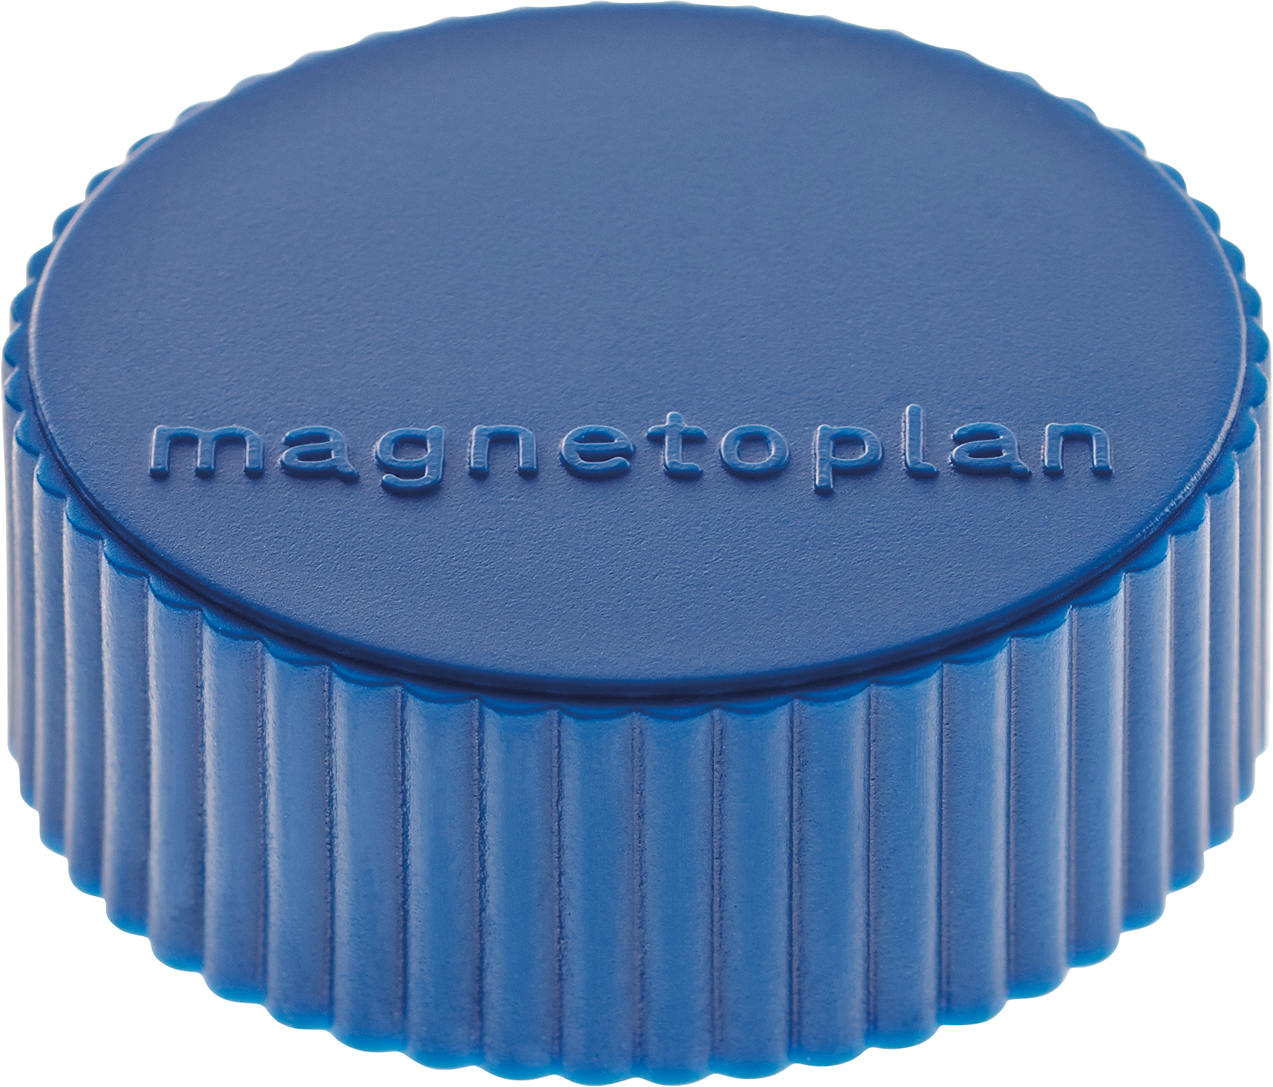 MAGNETOPLAN Support magnét.Discofix Magnum 1660014 bleu foncé, ca. 2 kg 10 pcs. bleu foncé, ca. 2 kg